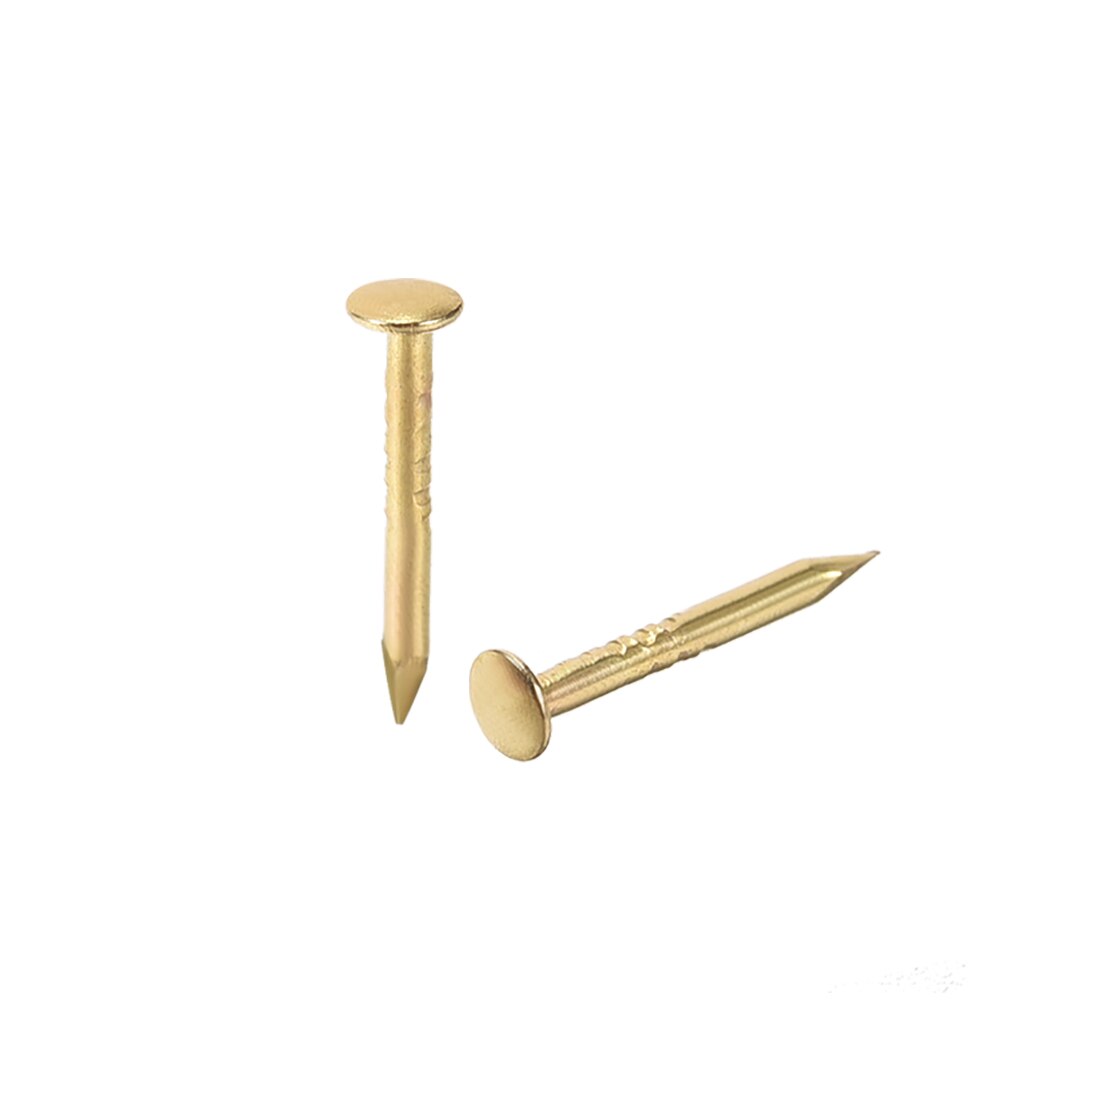 Uxcell 200Pcs Kleine Tiny Nagels 1mmX10mm Diy Huishoudelijke Accessoires Gold Tone Voor Huis Tuin Diy Toepassing